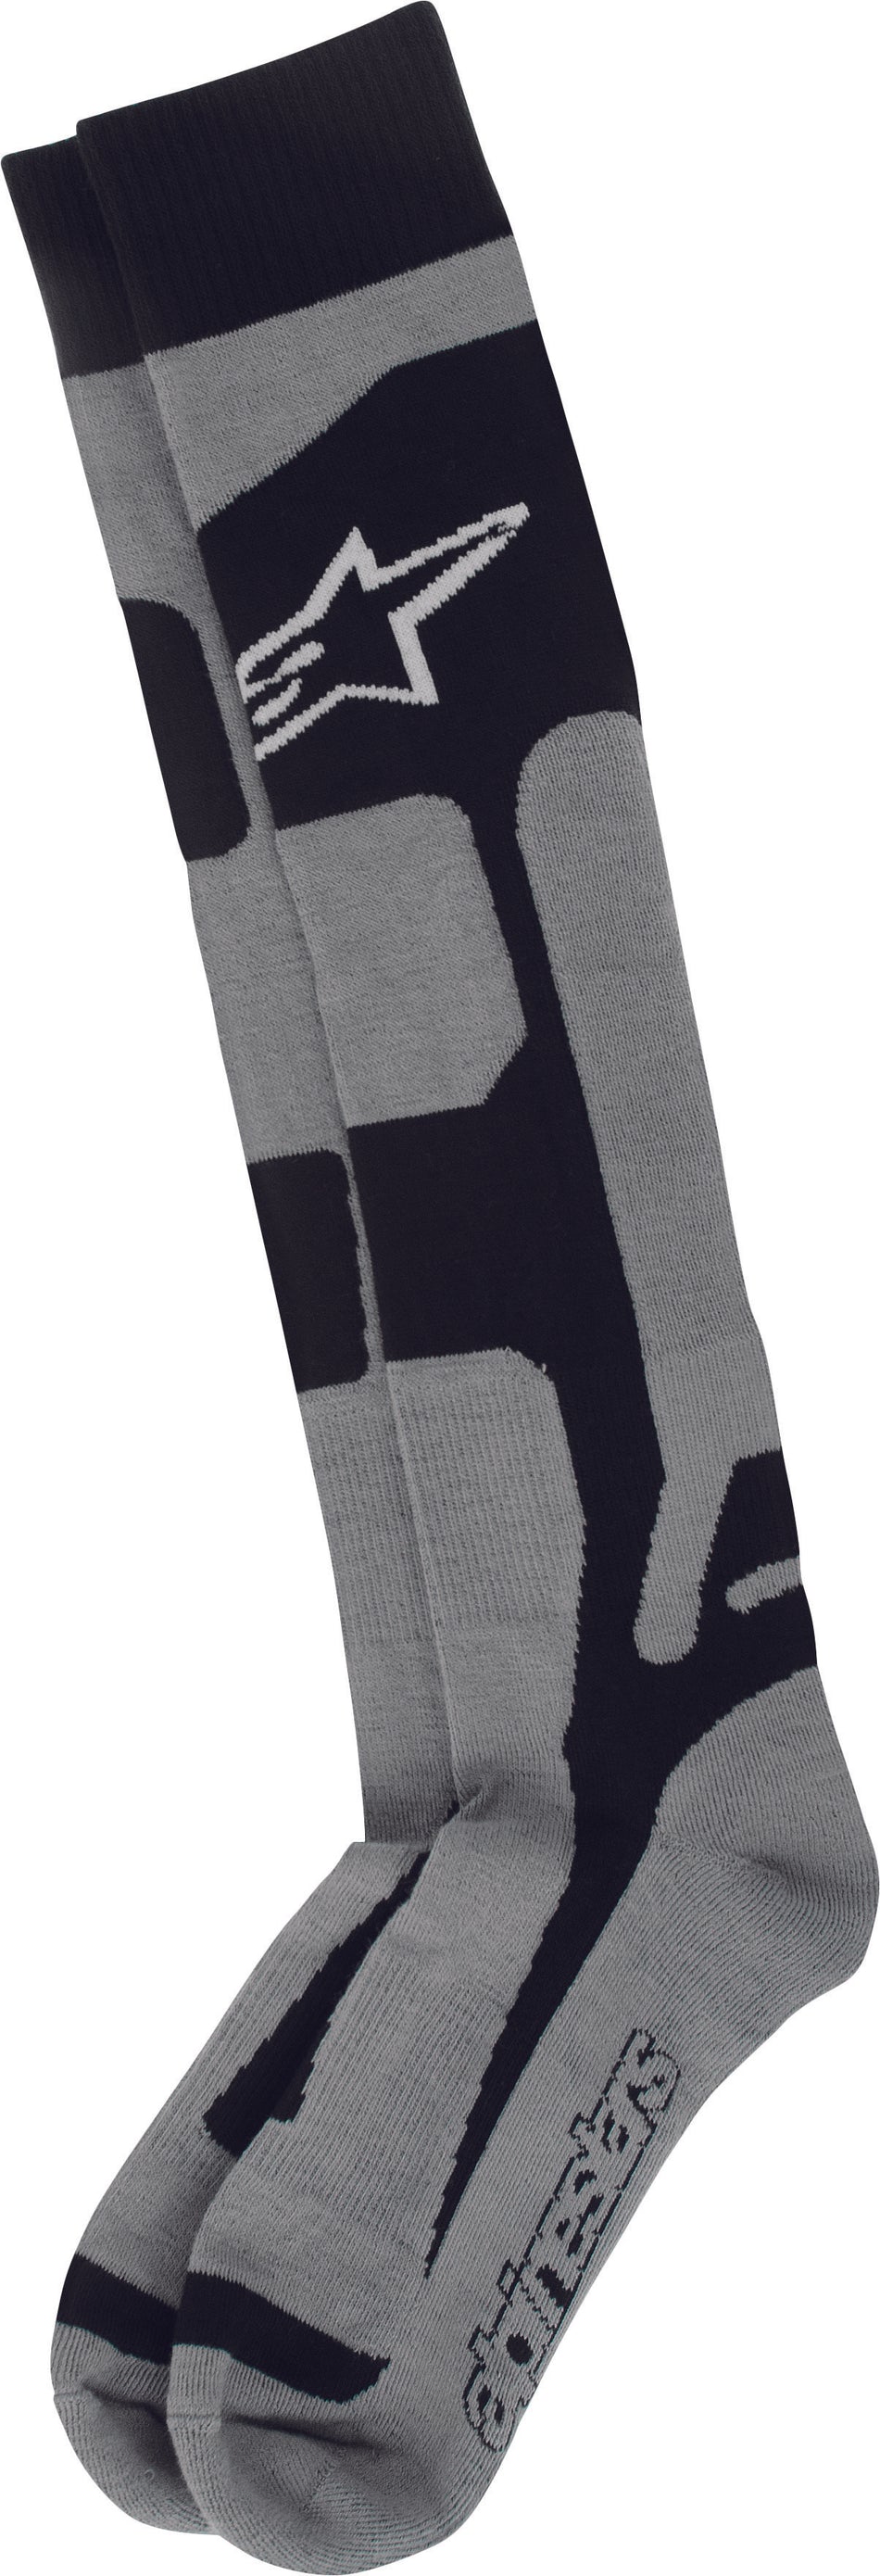 ALPINESTARS Tech Coolmax Socks Black Sm-Md 4702114-107-S/M